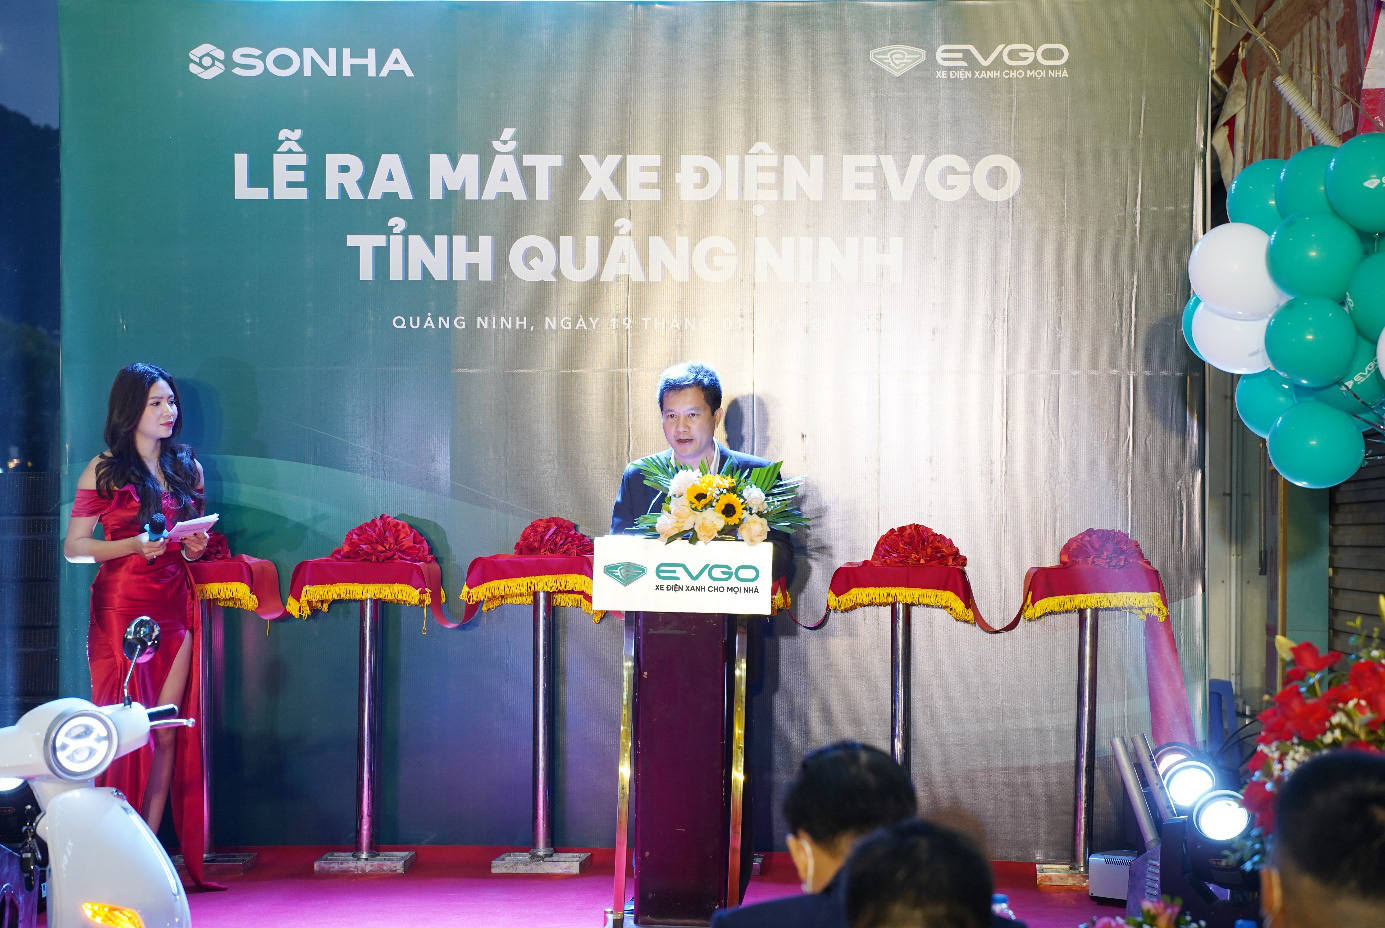 Xe máy điện EVGO của Sơn Hà ra mắt khách hàng tại Quảng Ninh - Ảnh 1.